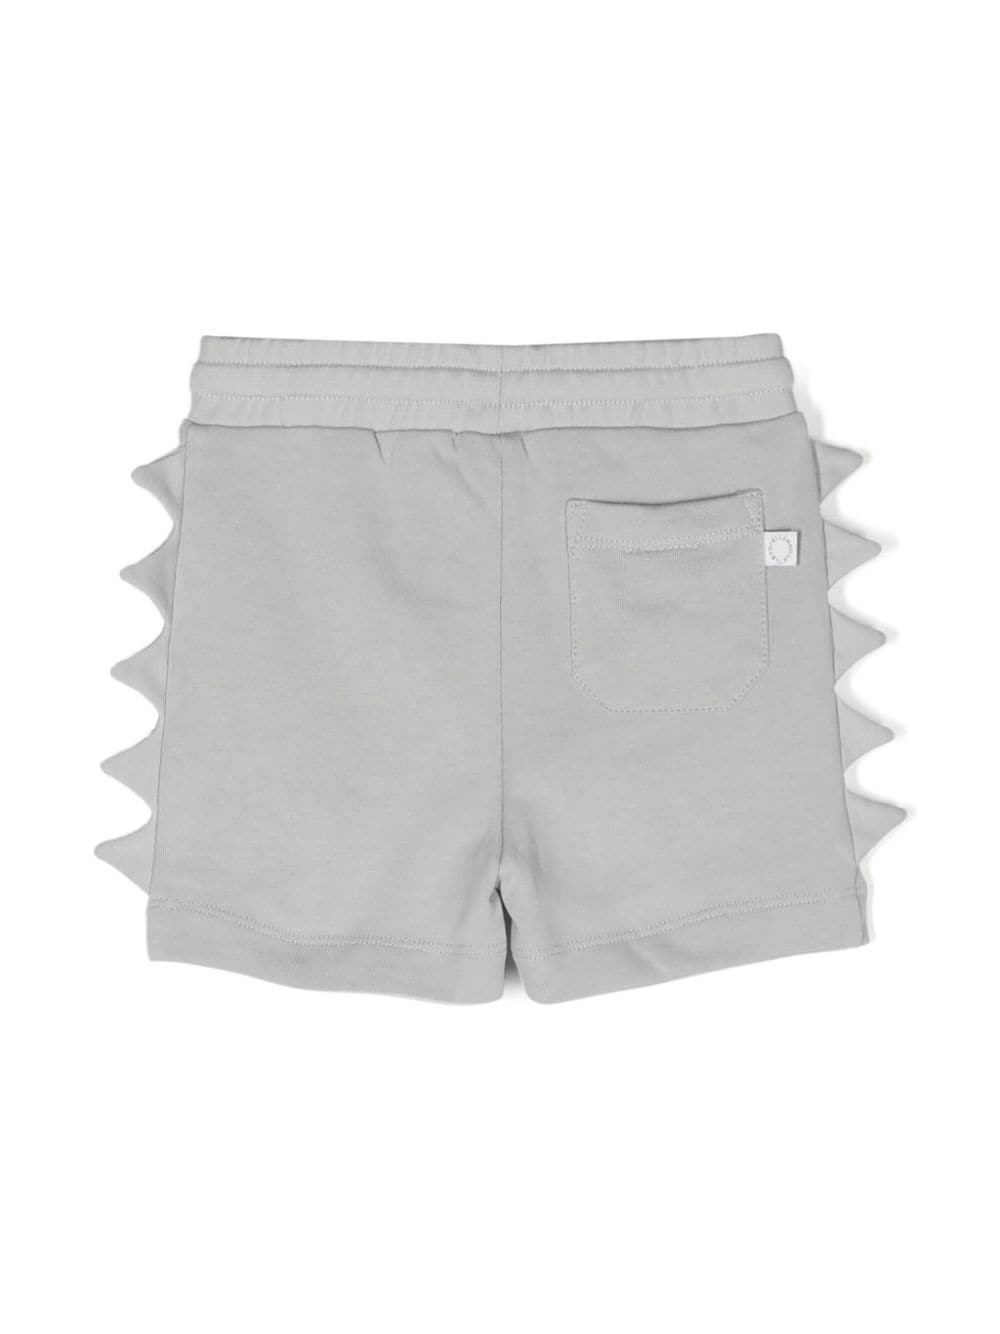 Gray Bermuda shorts for newborns